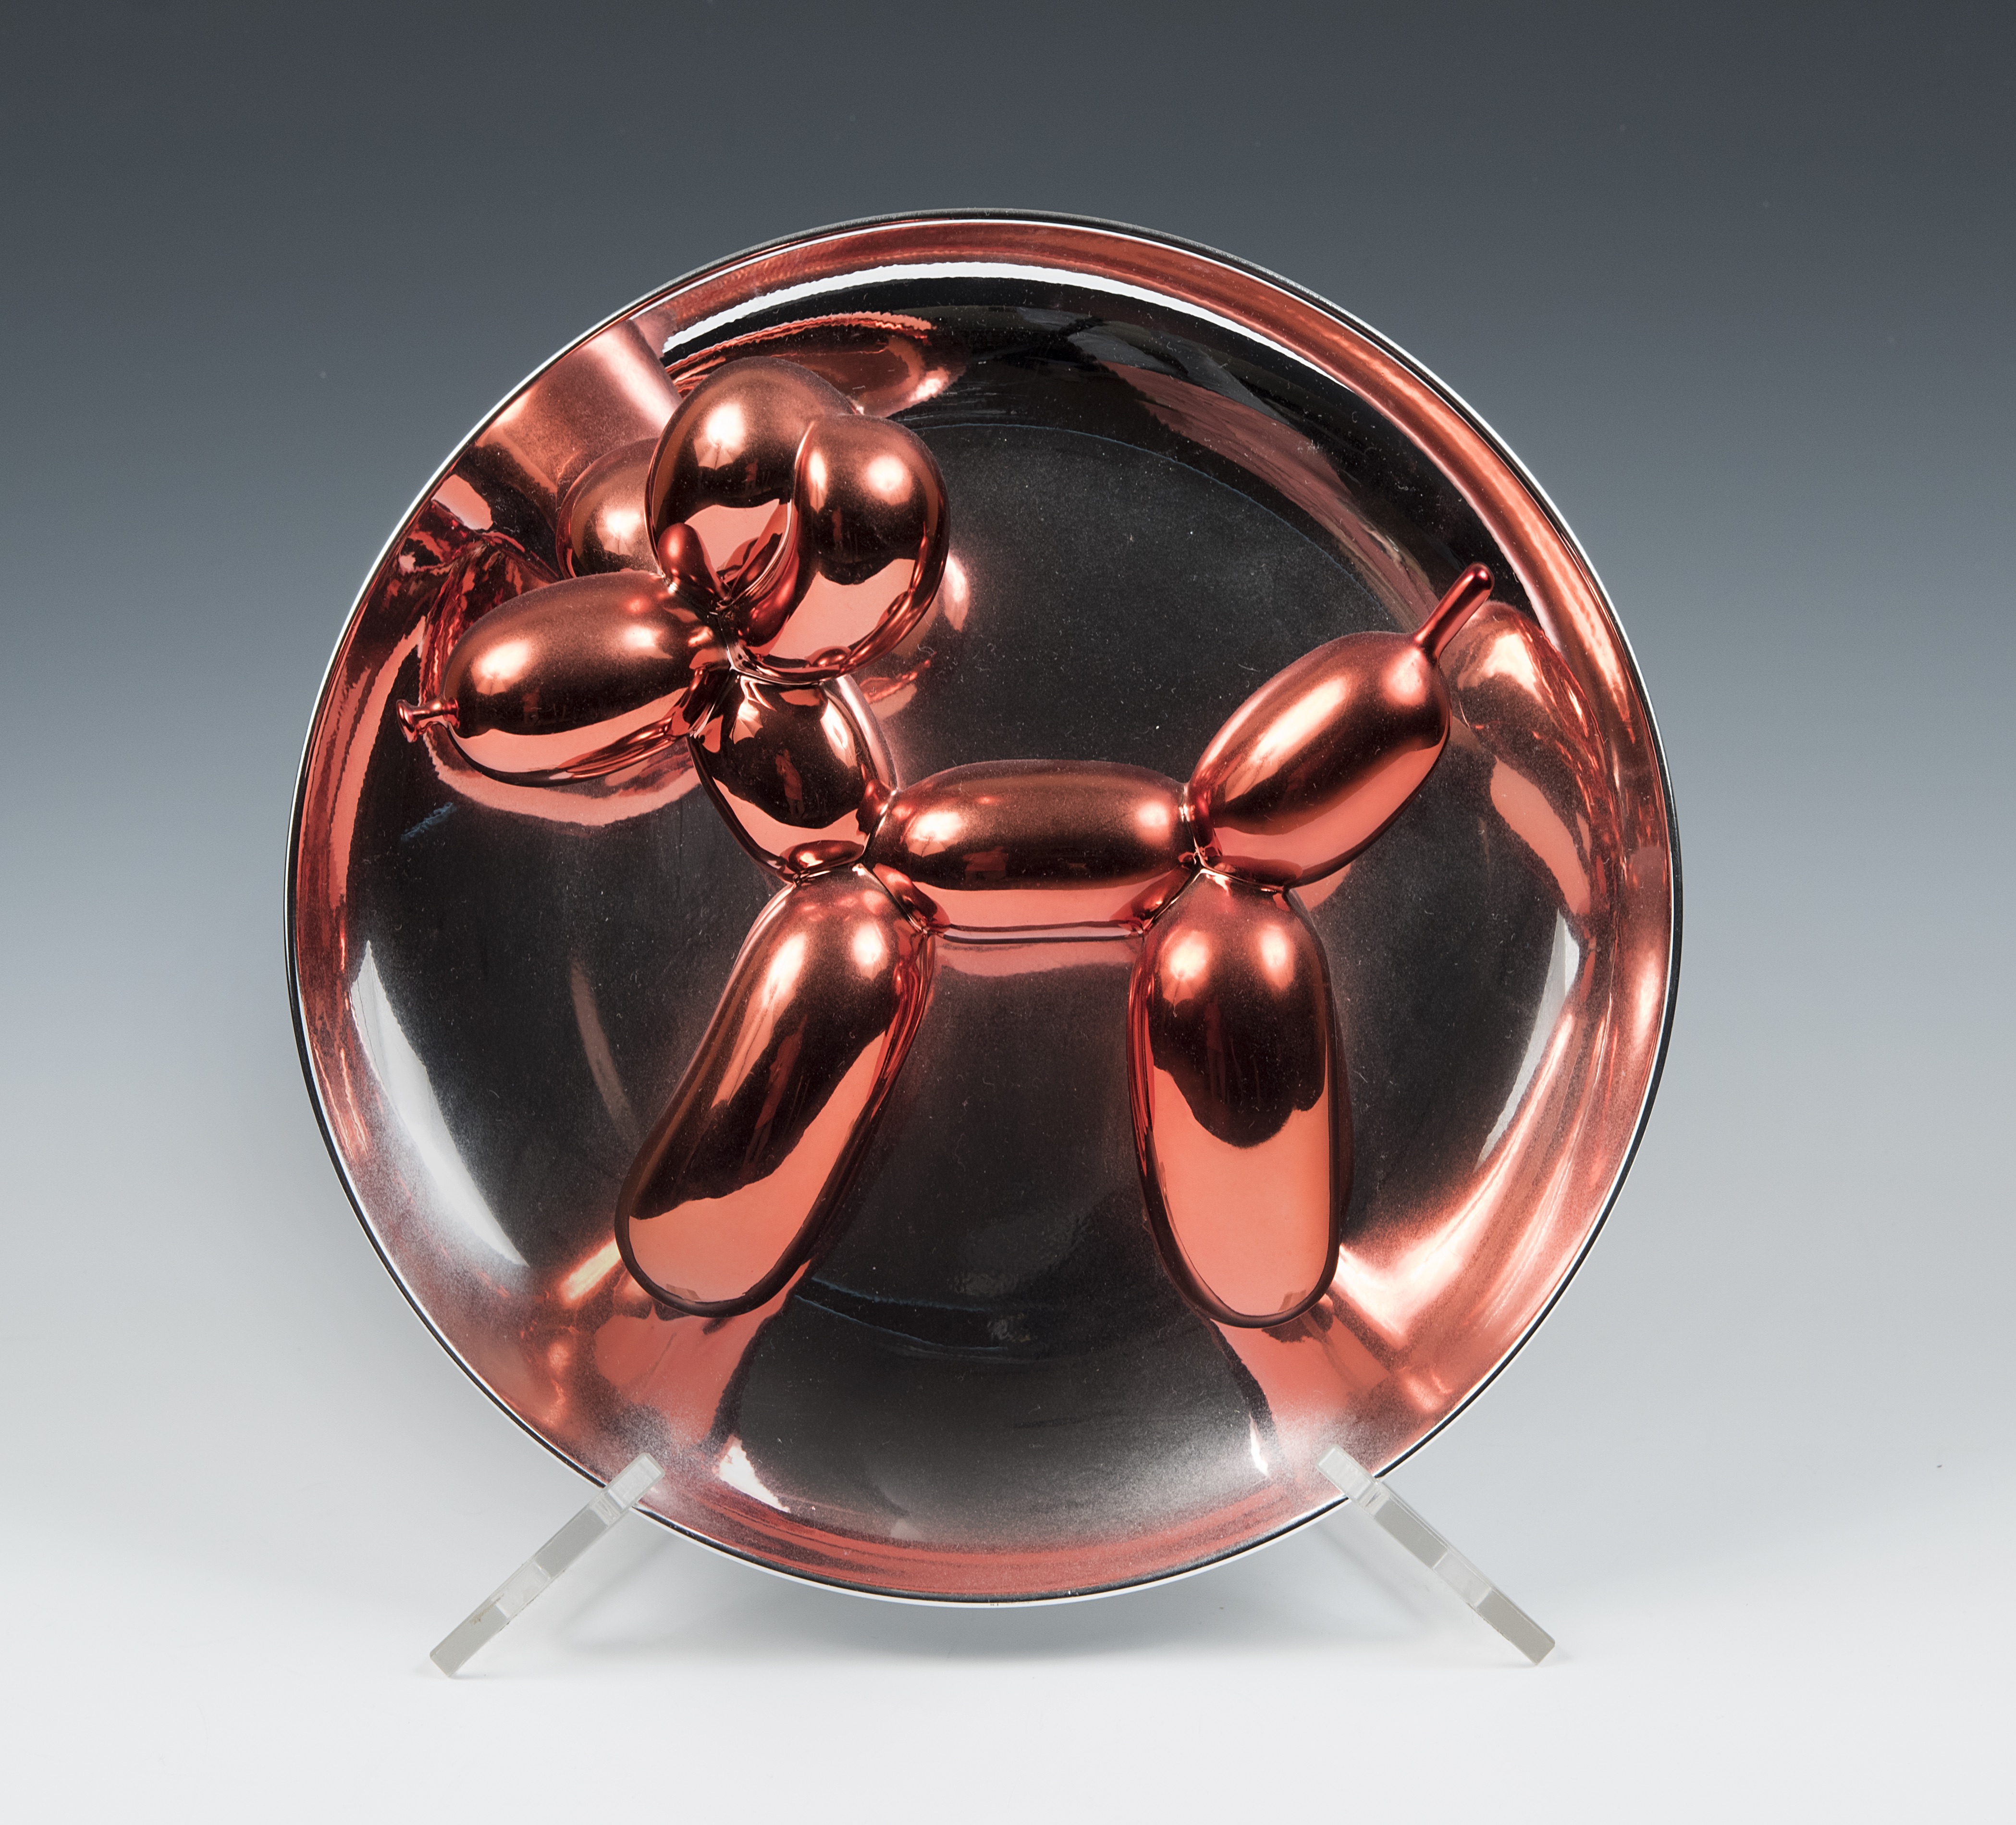 Artwork Spotlight: Jeff Koons' Balloon Dog